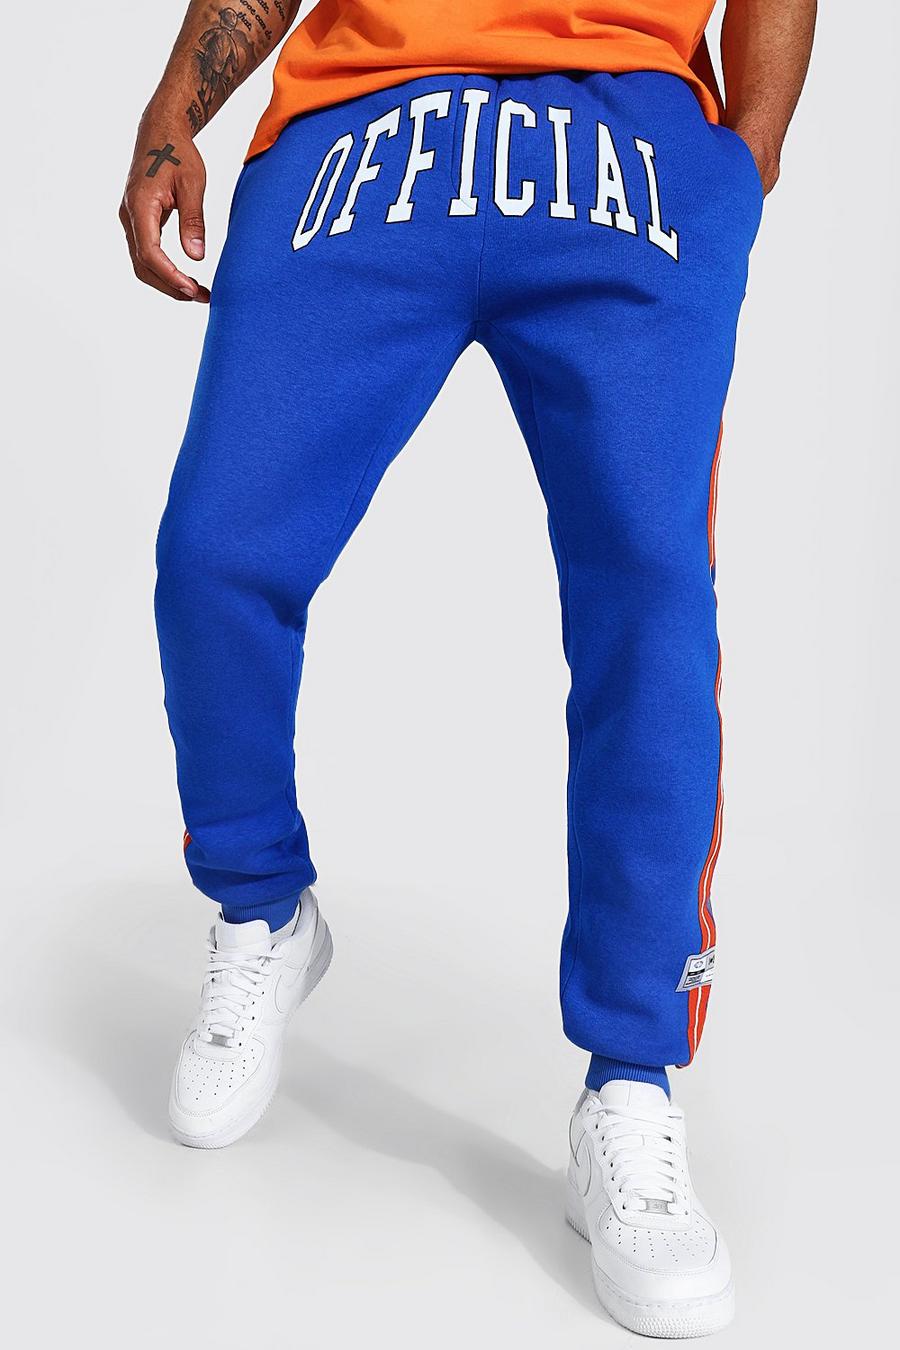 כחול מכנסי ריצה בגזרה רגילה עם פסים בסגנון נבחרת ספורט והדפס Official image number 1